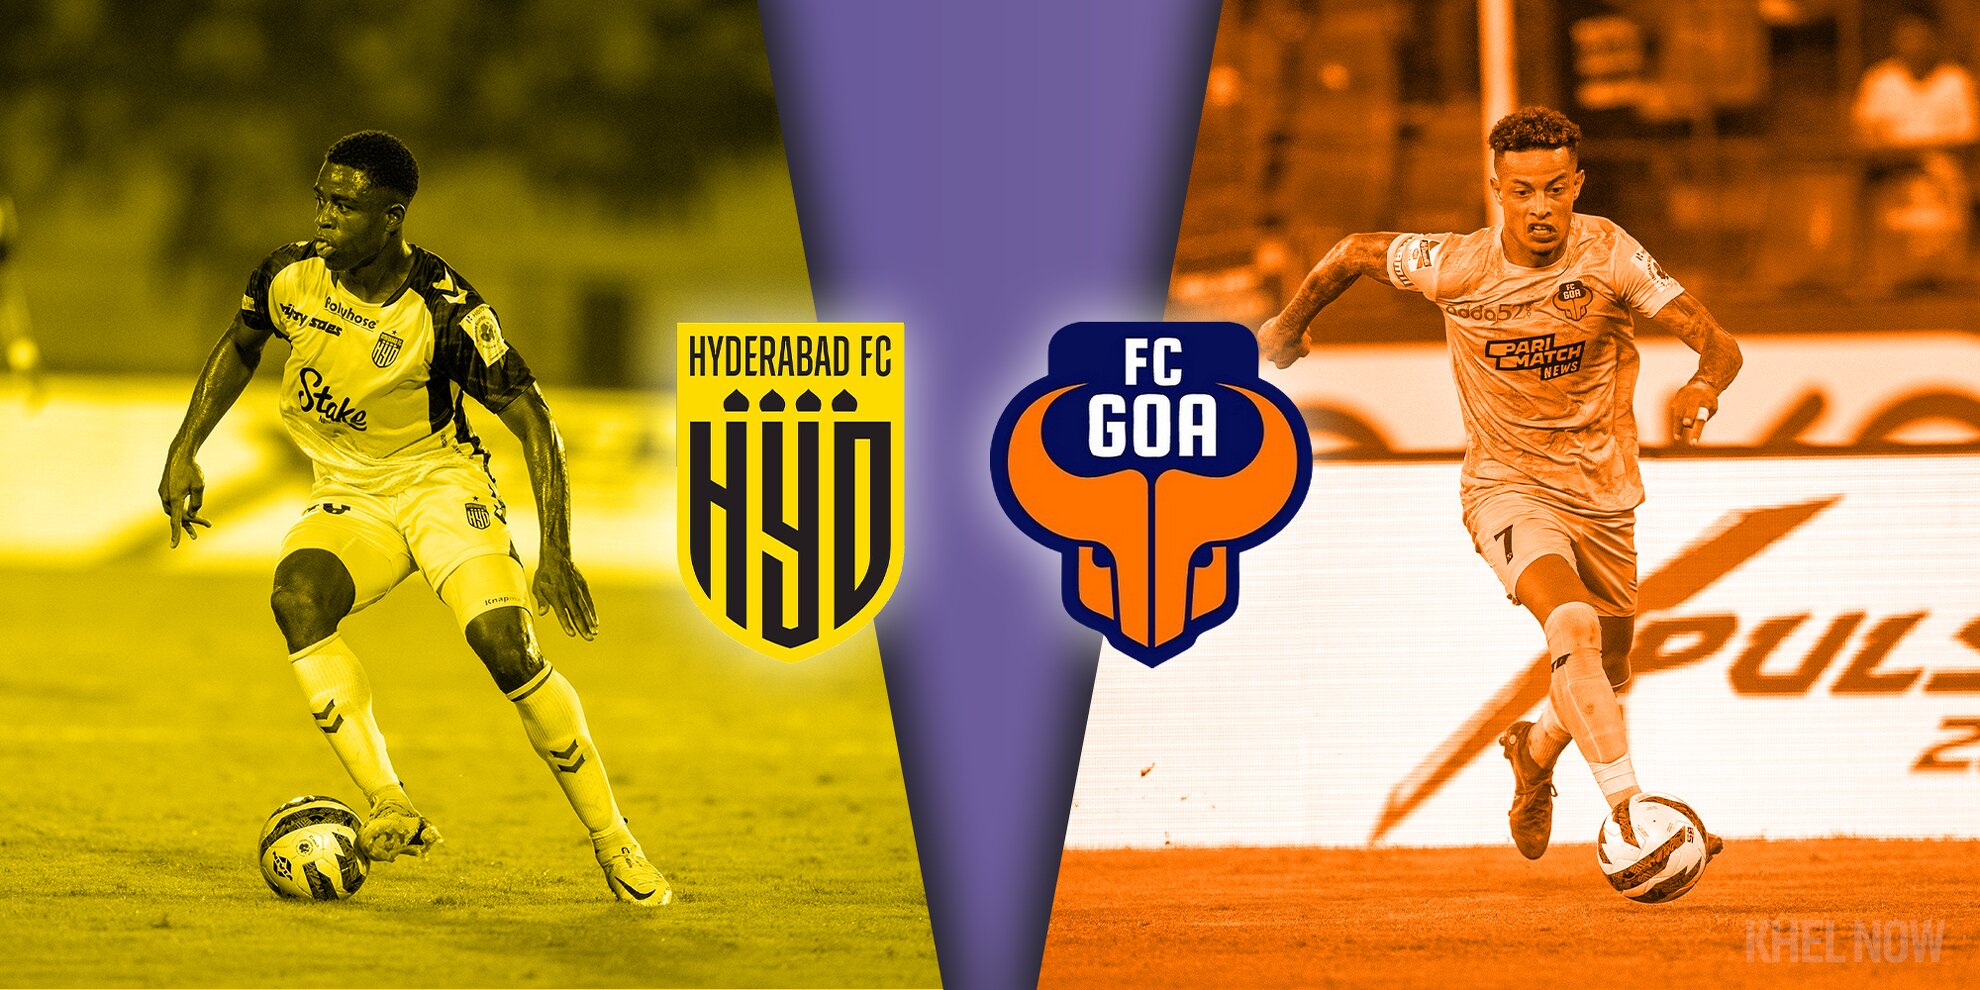 Hyderabad FC vs FC Goa Preview